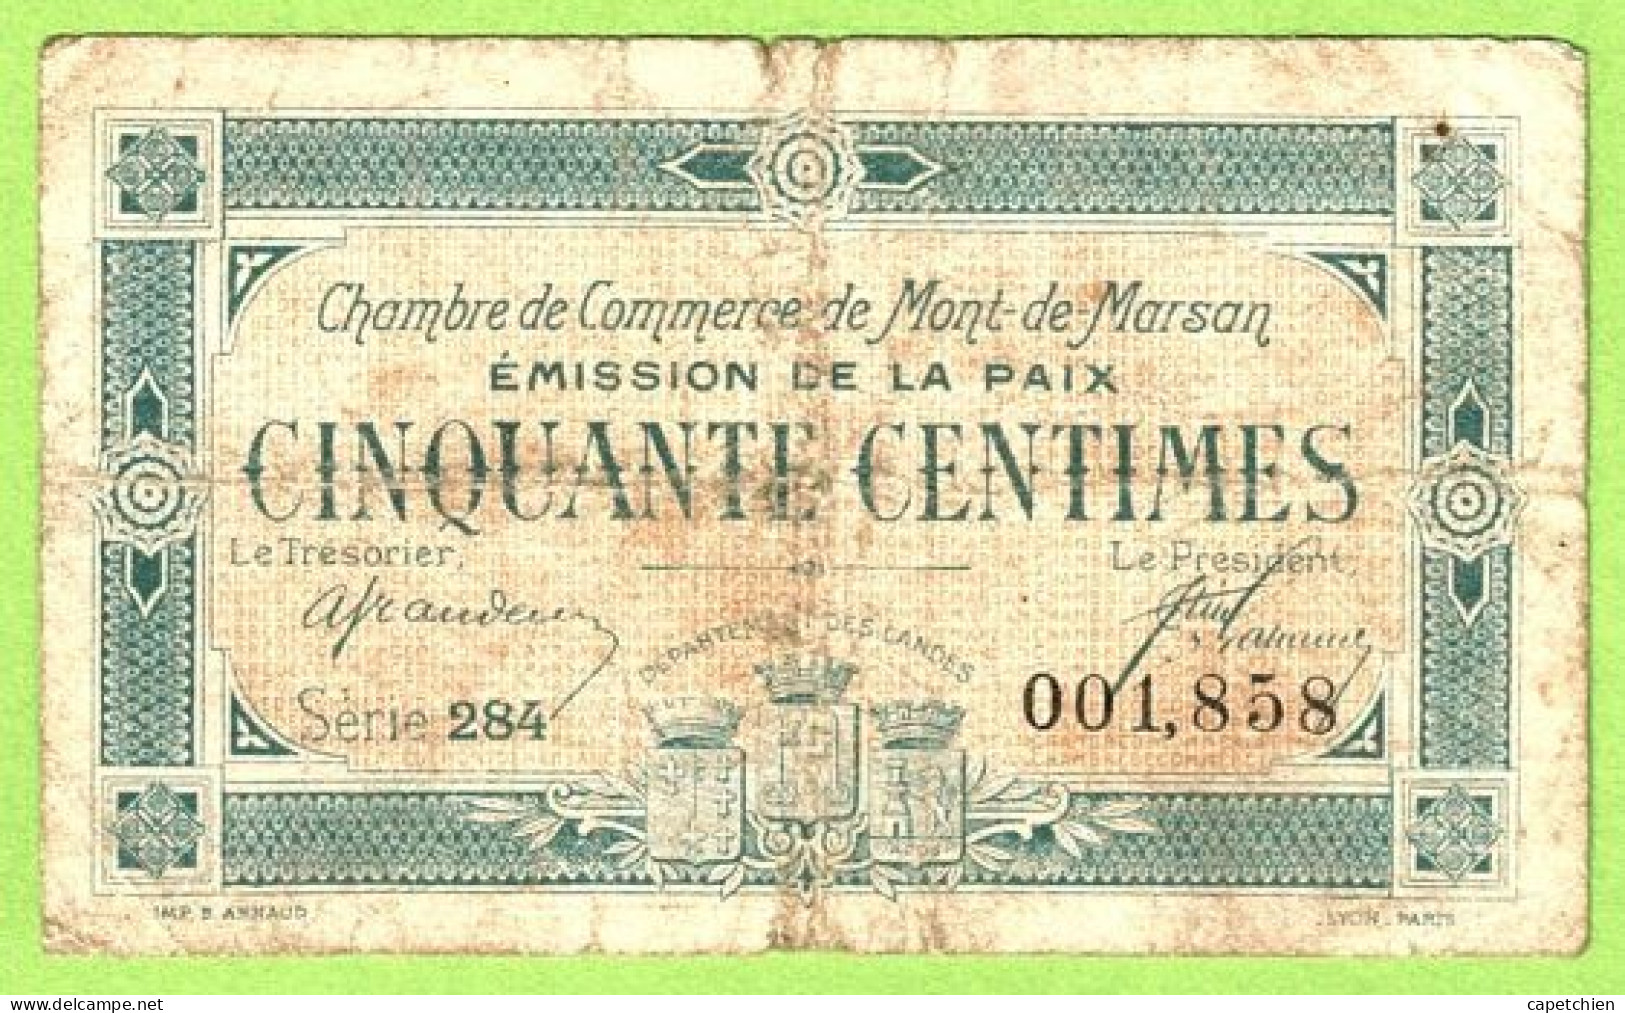 FRANCE / CHAMBRE De COMMERCE / MONT DE MARSAN / 50 CENTIMES / 1921 / EMISSION DE LA PAIX 001858 / SERIE 284 - Chamber Of Commerce